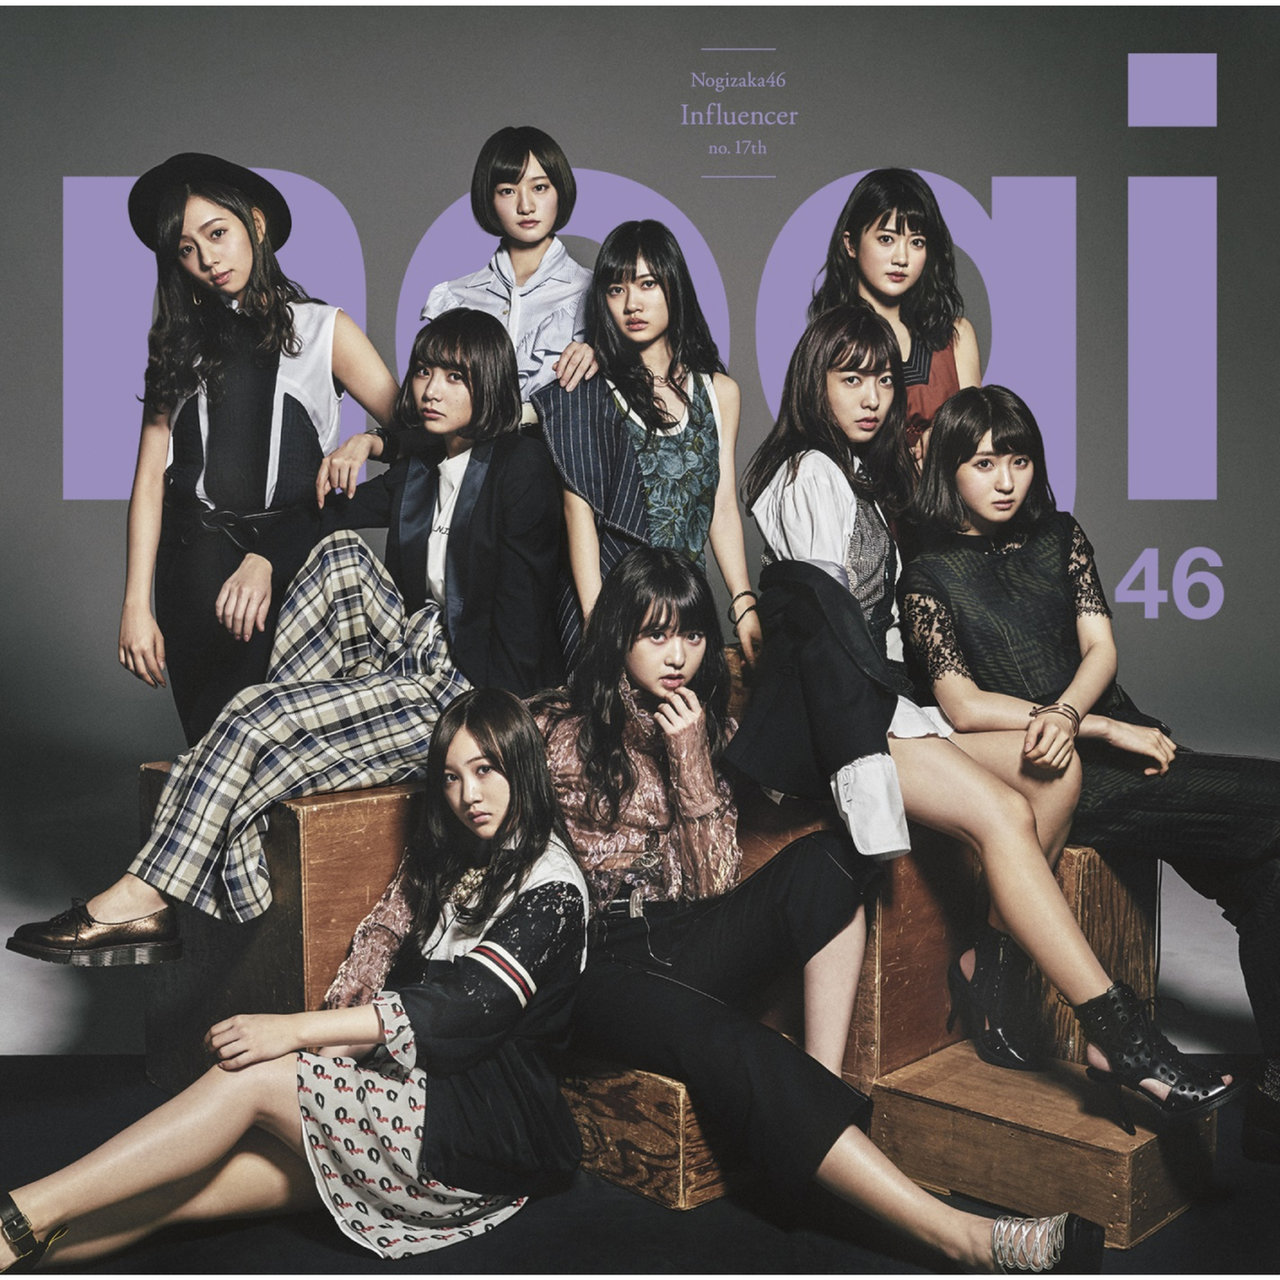 Nogizaka46 — Influencer cover artwork